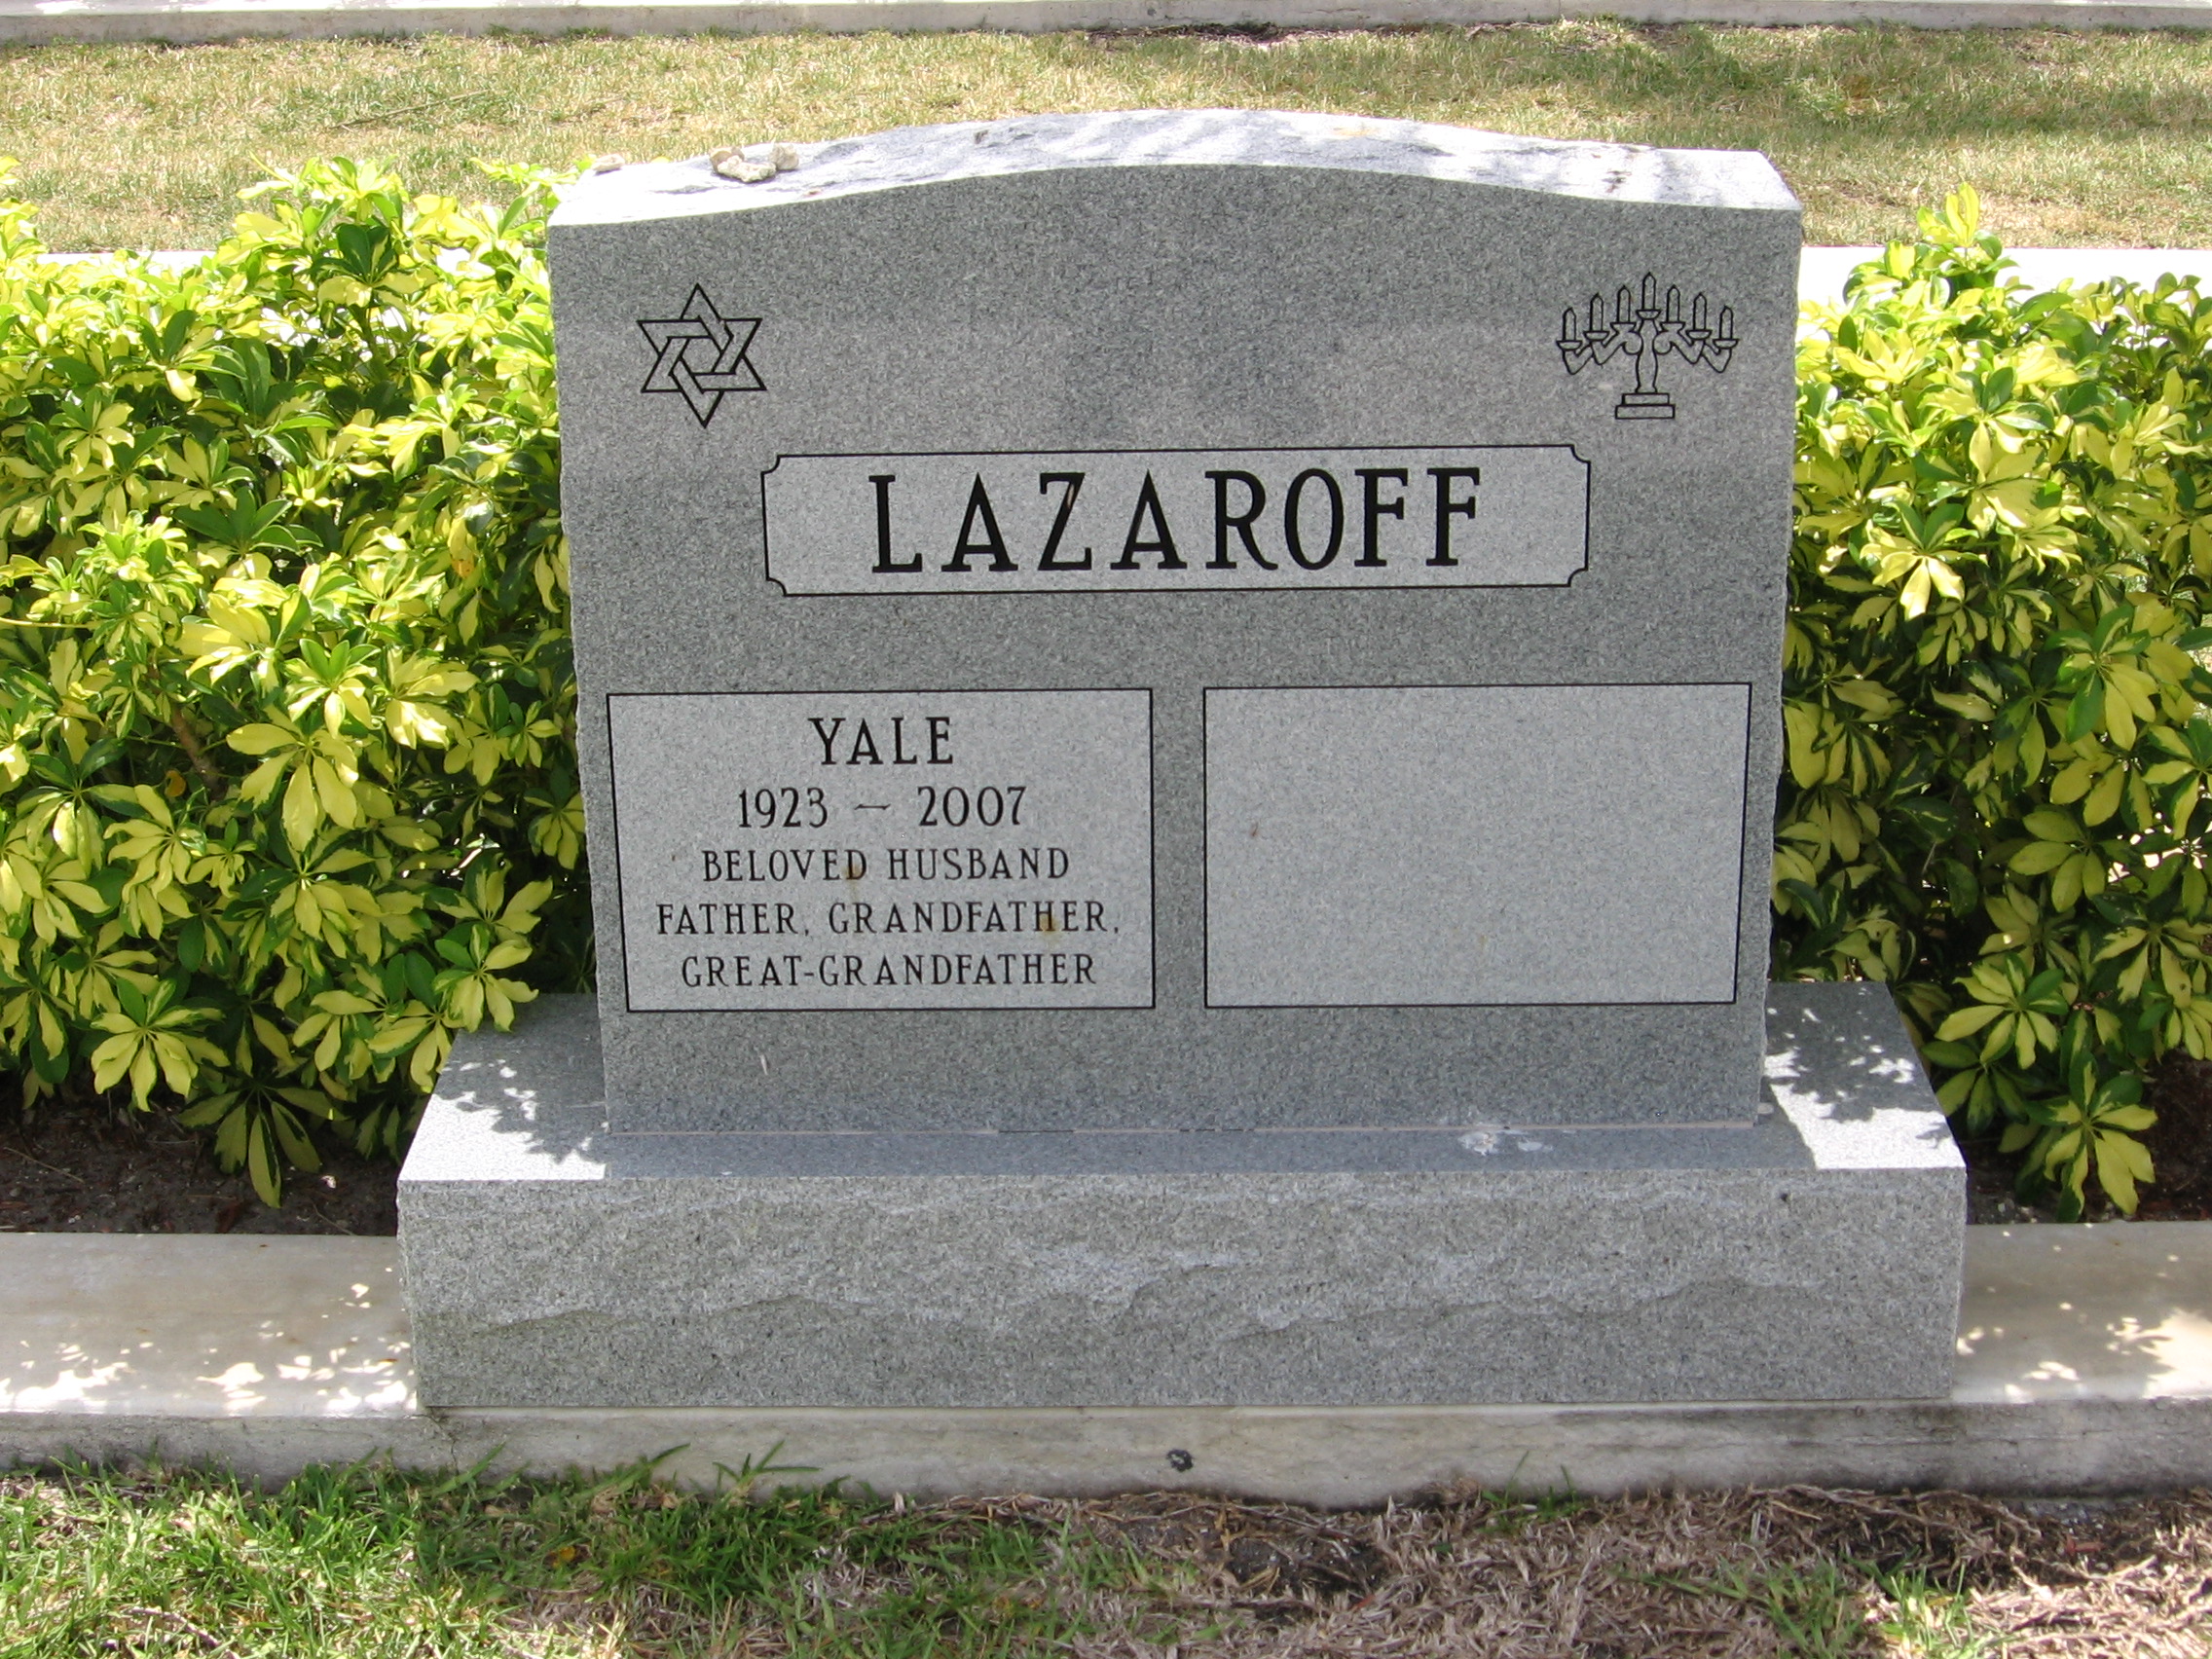 Yale Lazaroff